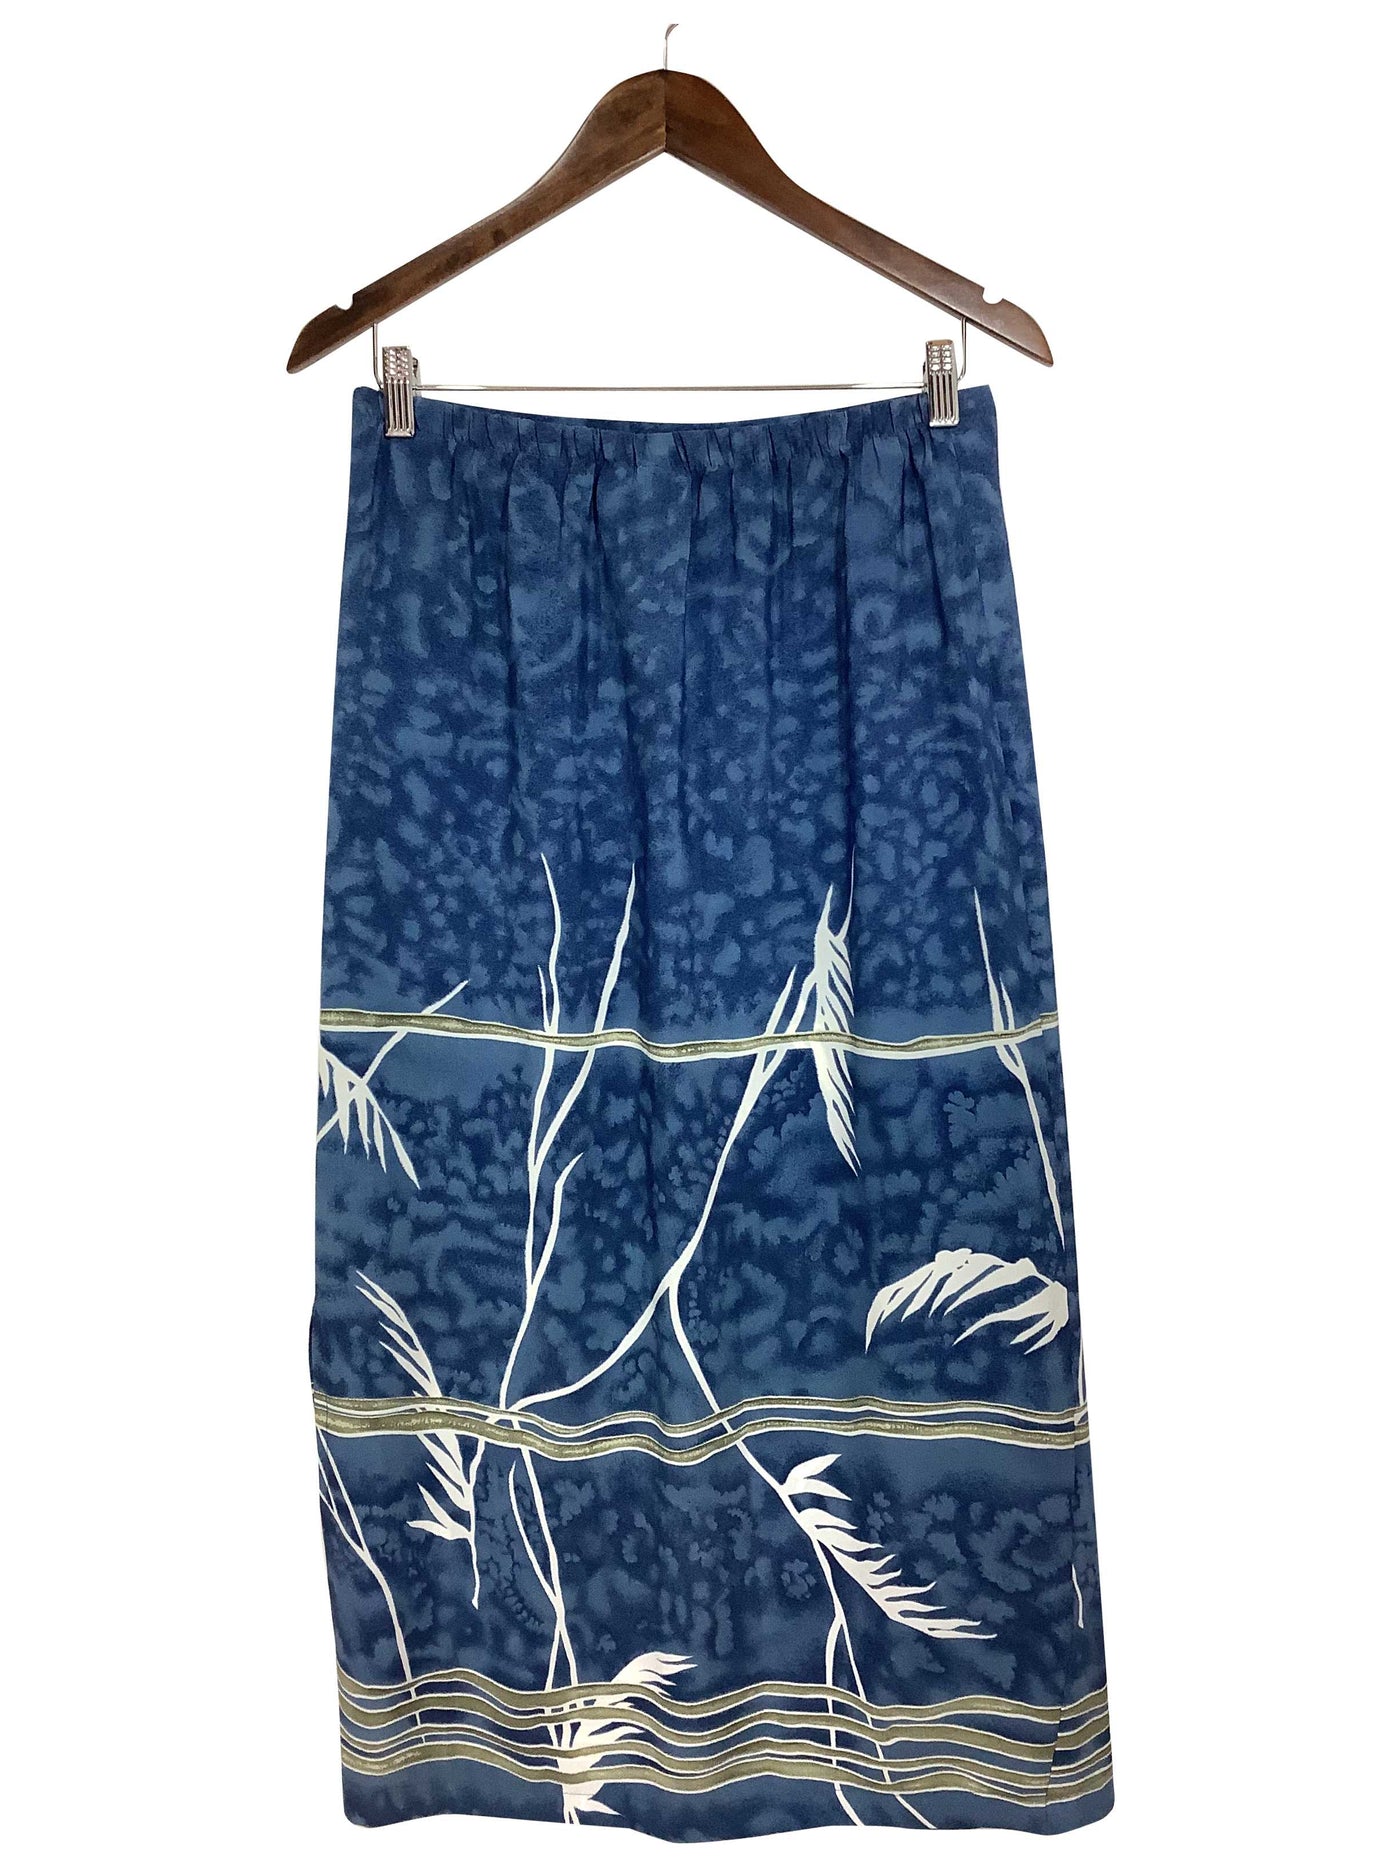 TRADITION Regular fit Skirt in Blue - Size 10 | 13.25 $ KOOP